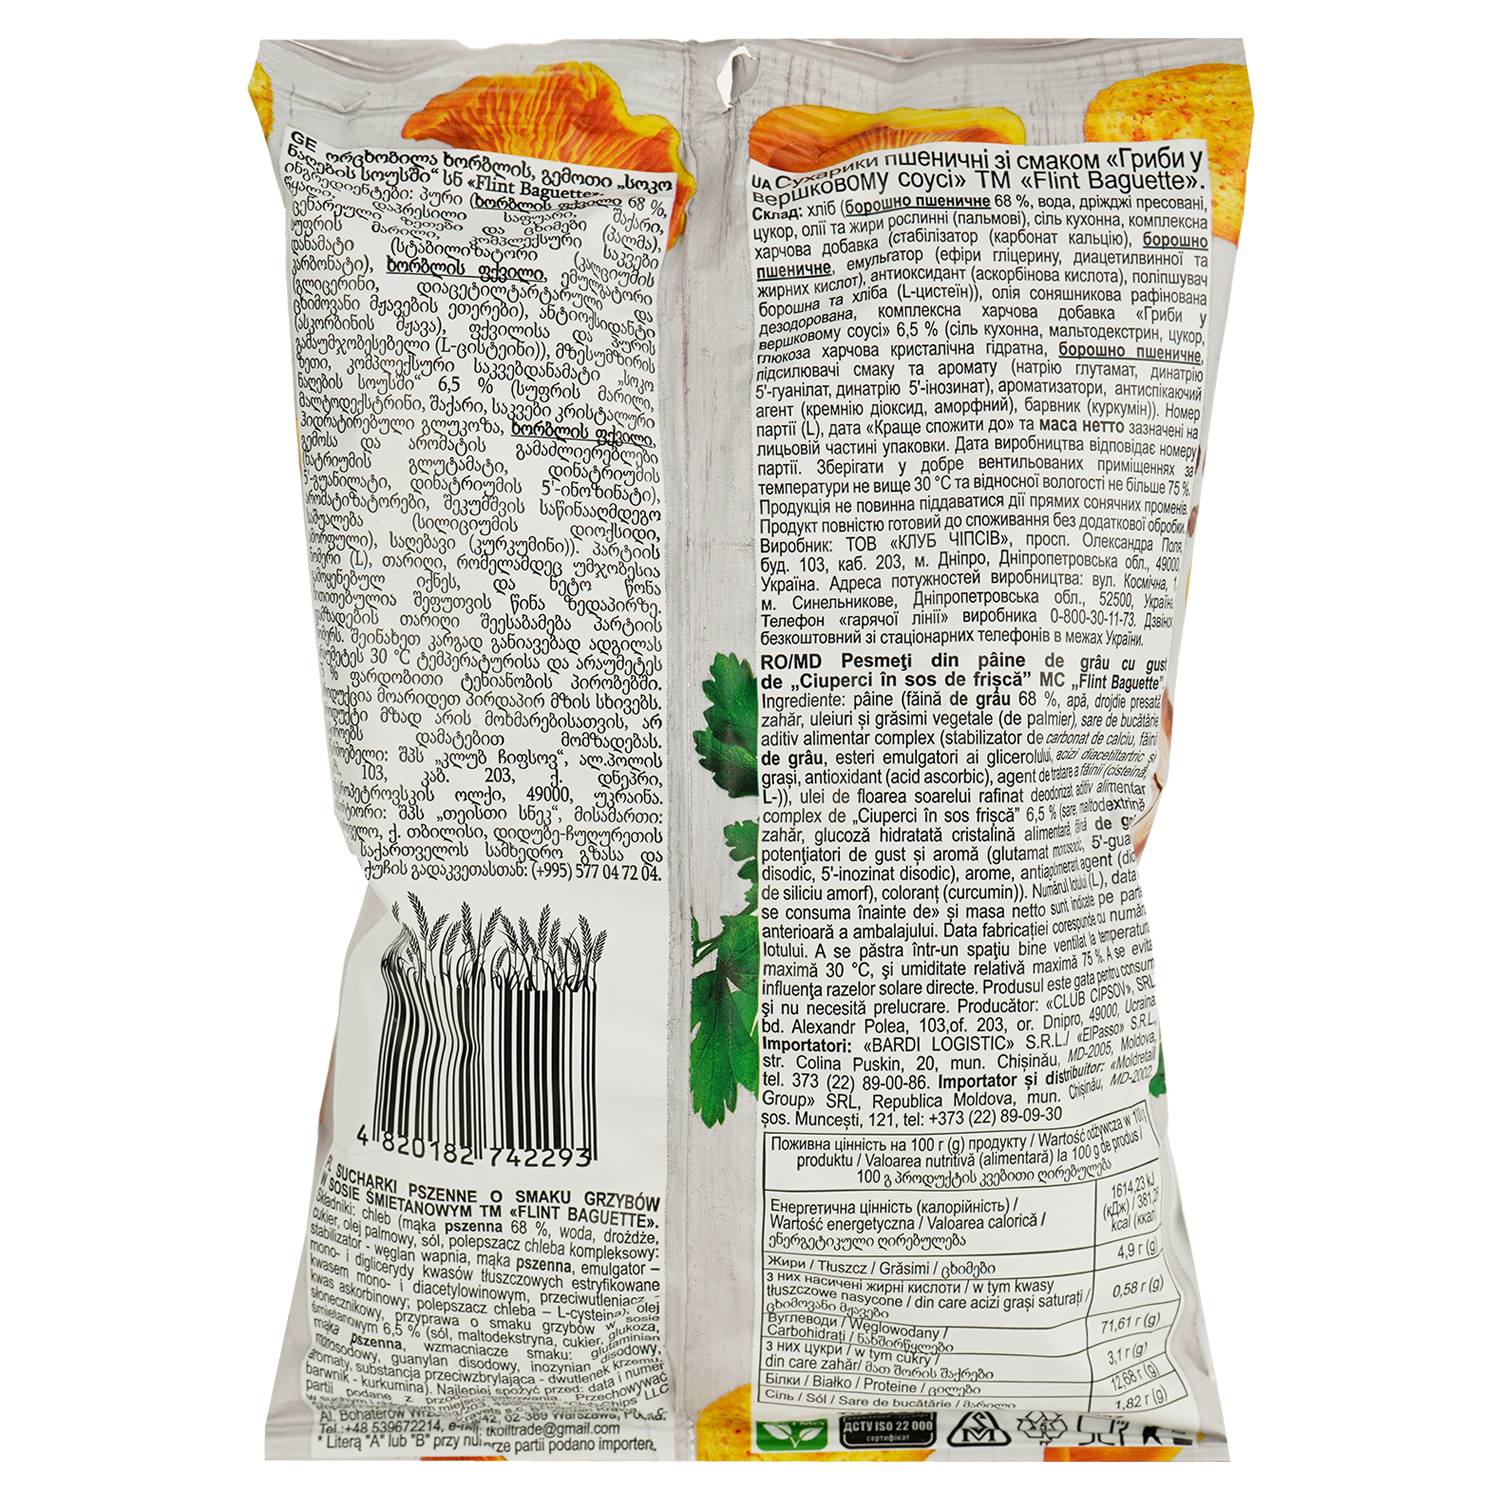 Сухарики Flint Baguette Пшеничные со вкусом грибов в сливочном соусе 60 г (717885) - фото 5